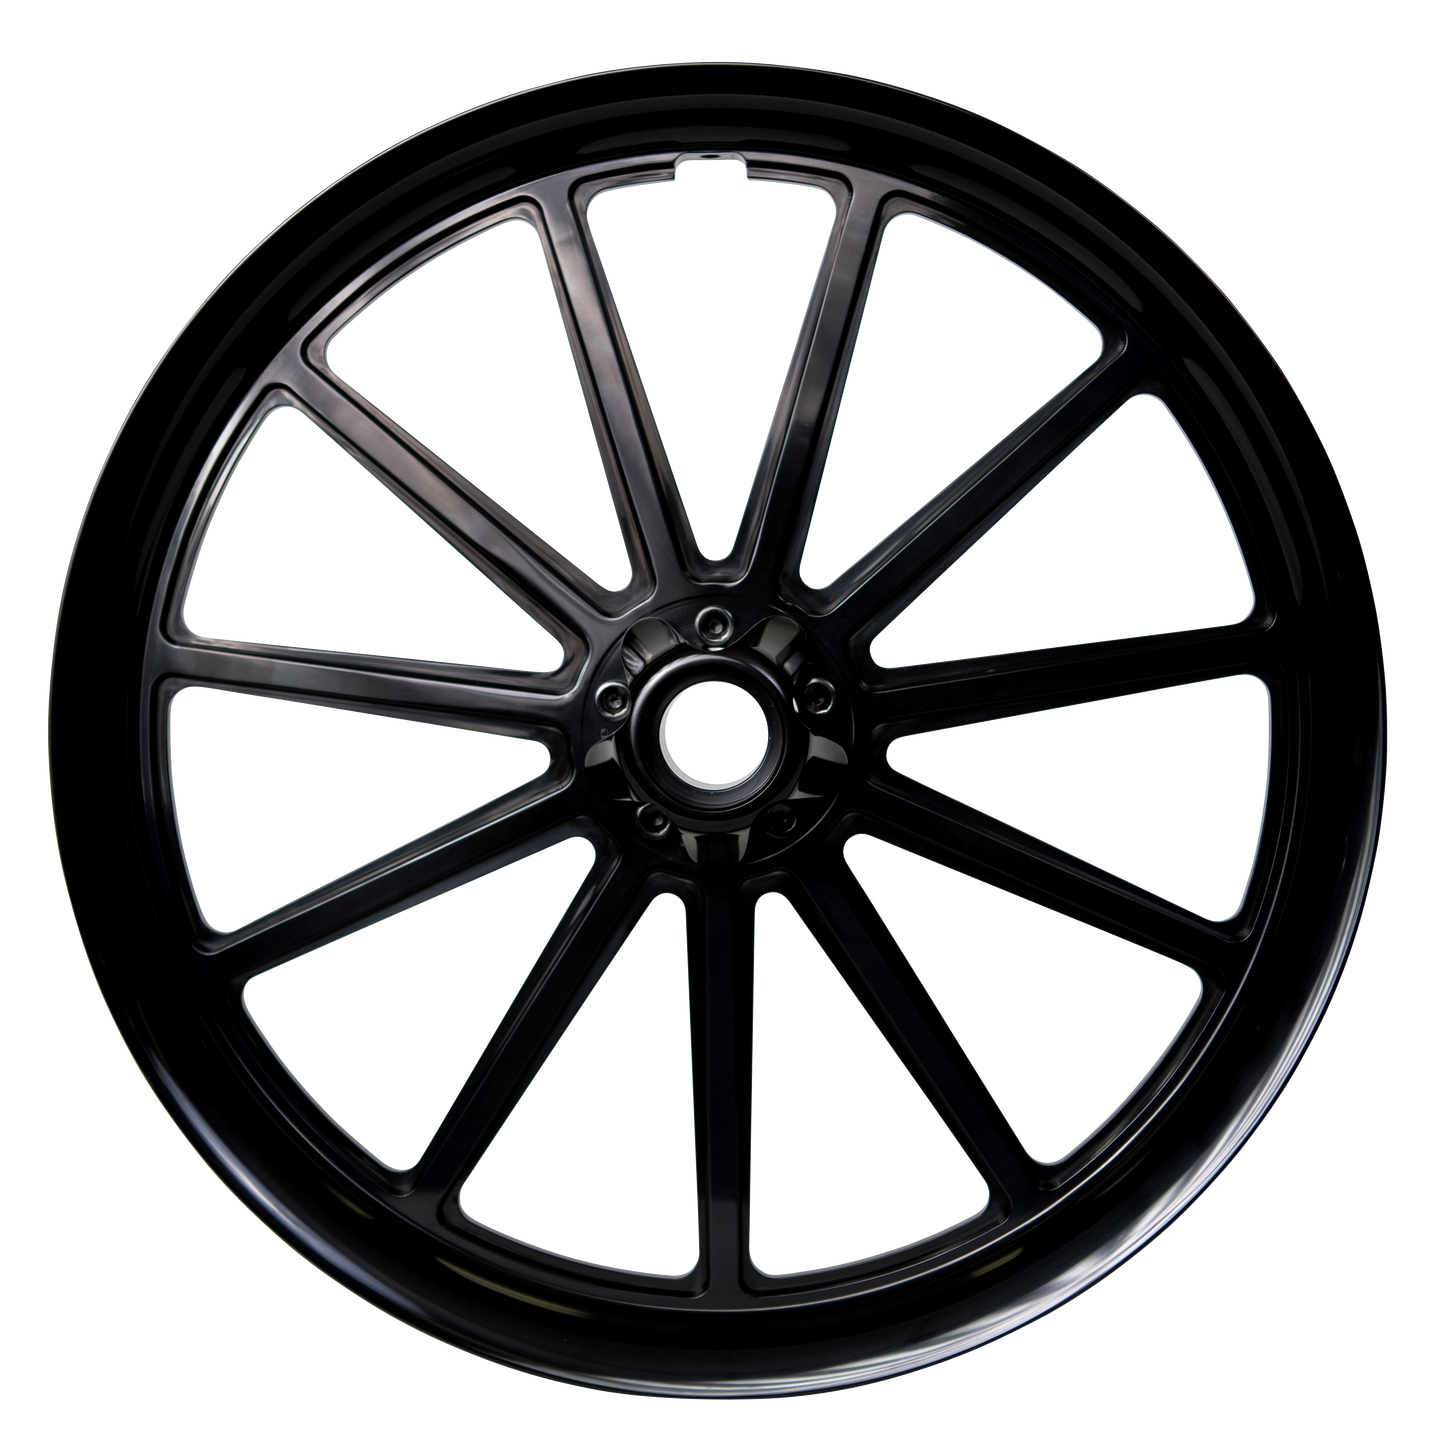 11-Spoke Wheel - Rear